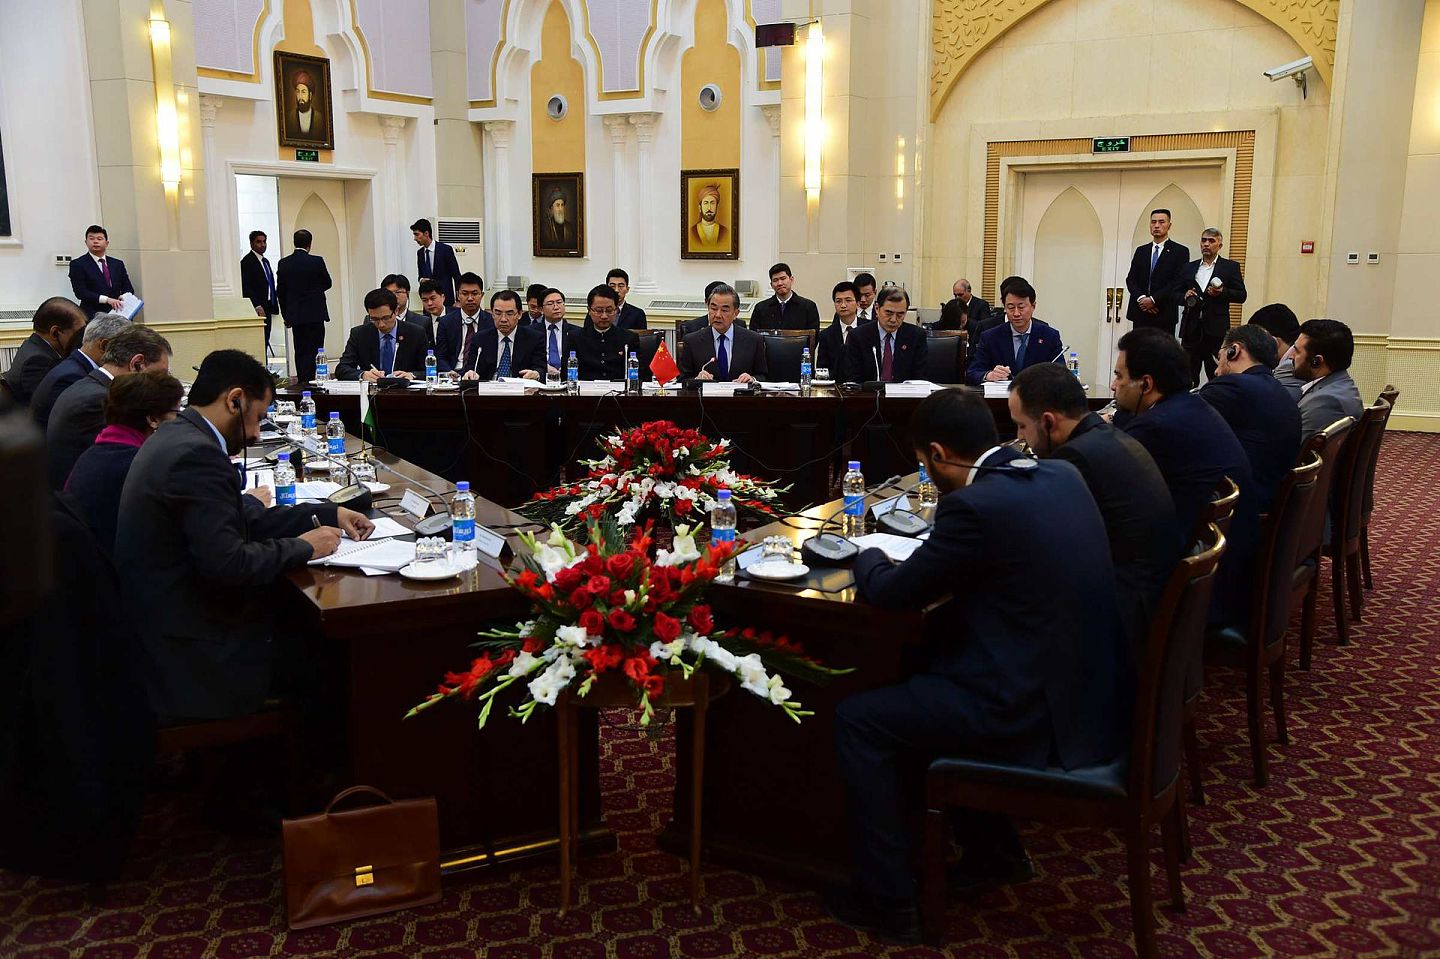 2018年12月15日，第二次中国-阿富汗-巴基斯坦三方外长对话在阿富汗喀布尔举行，中国外长王毅、时任阿富汗外长拉巴尼（Salahuddin Rabbani）、巴基斯坦外长库雷希（Shah Mahmood Qureshi）出席。（新华社）